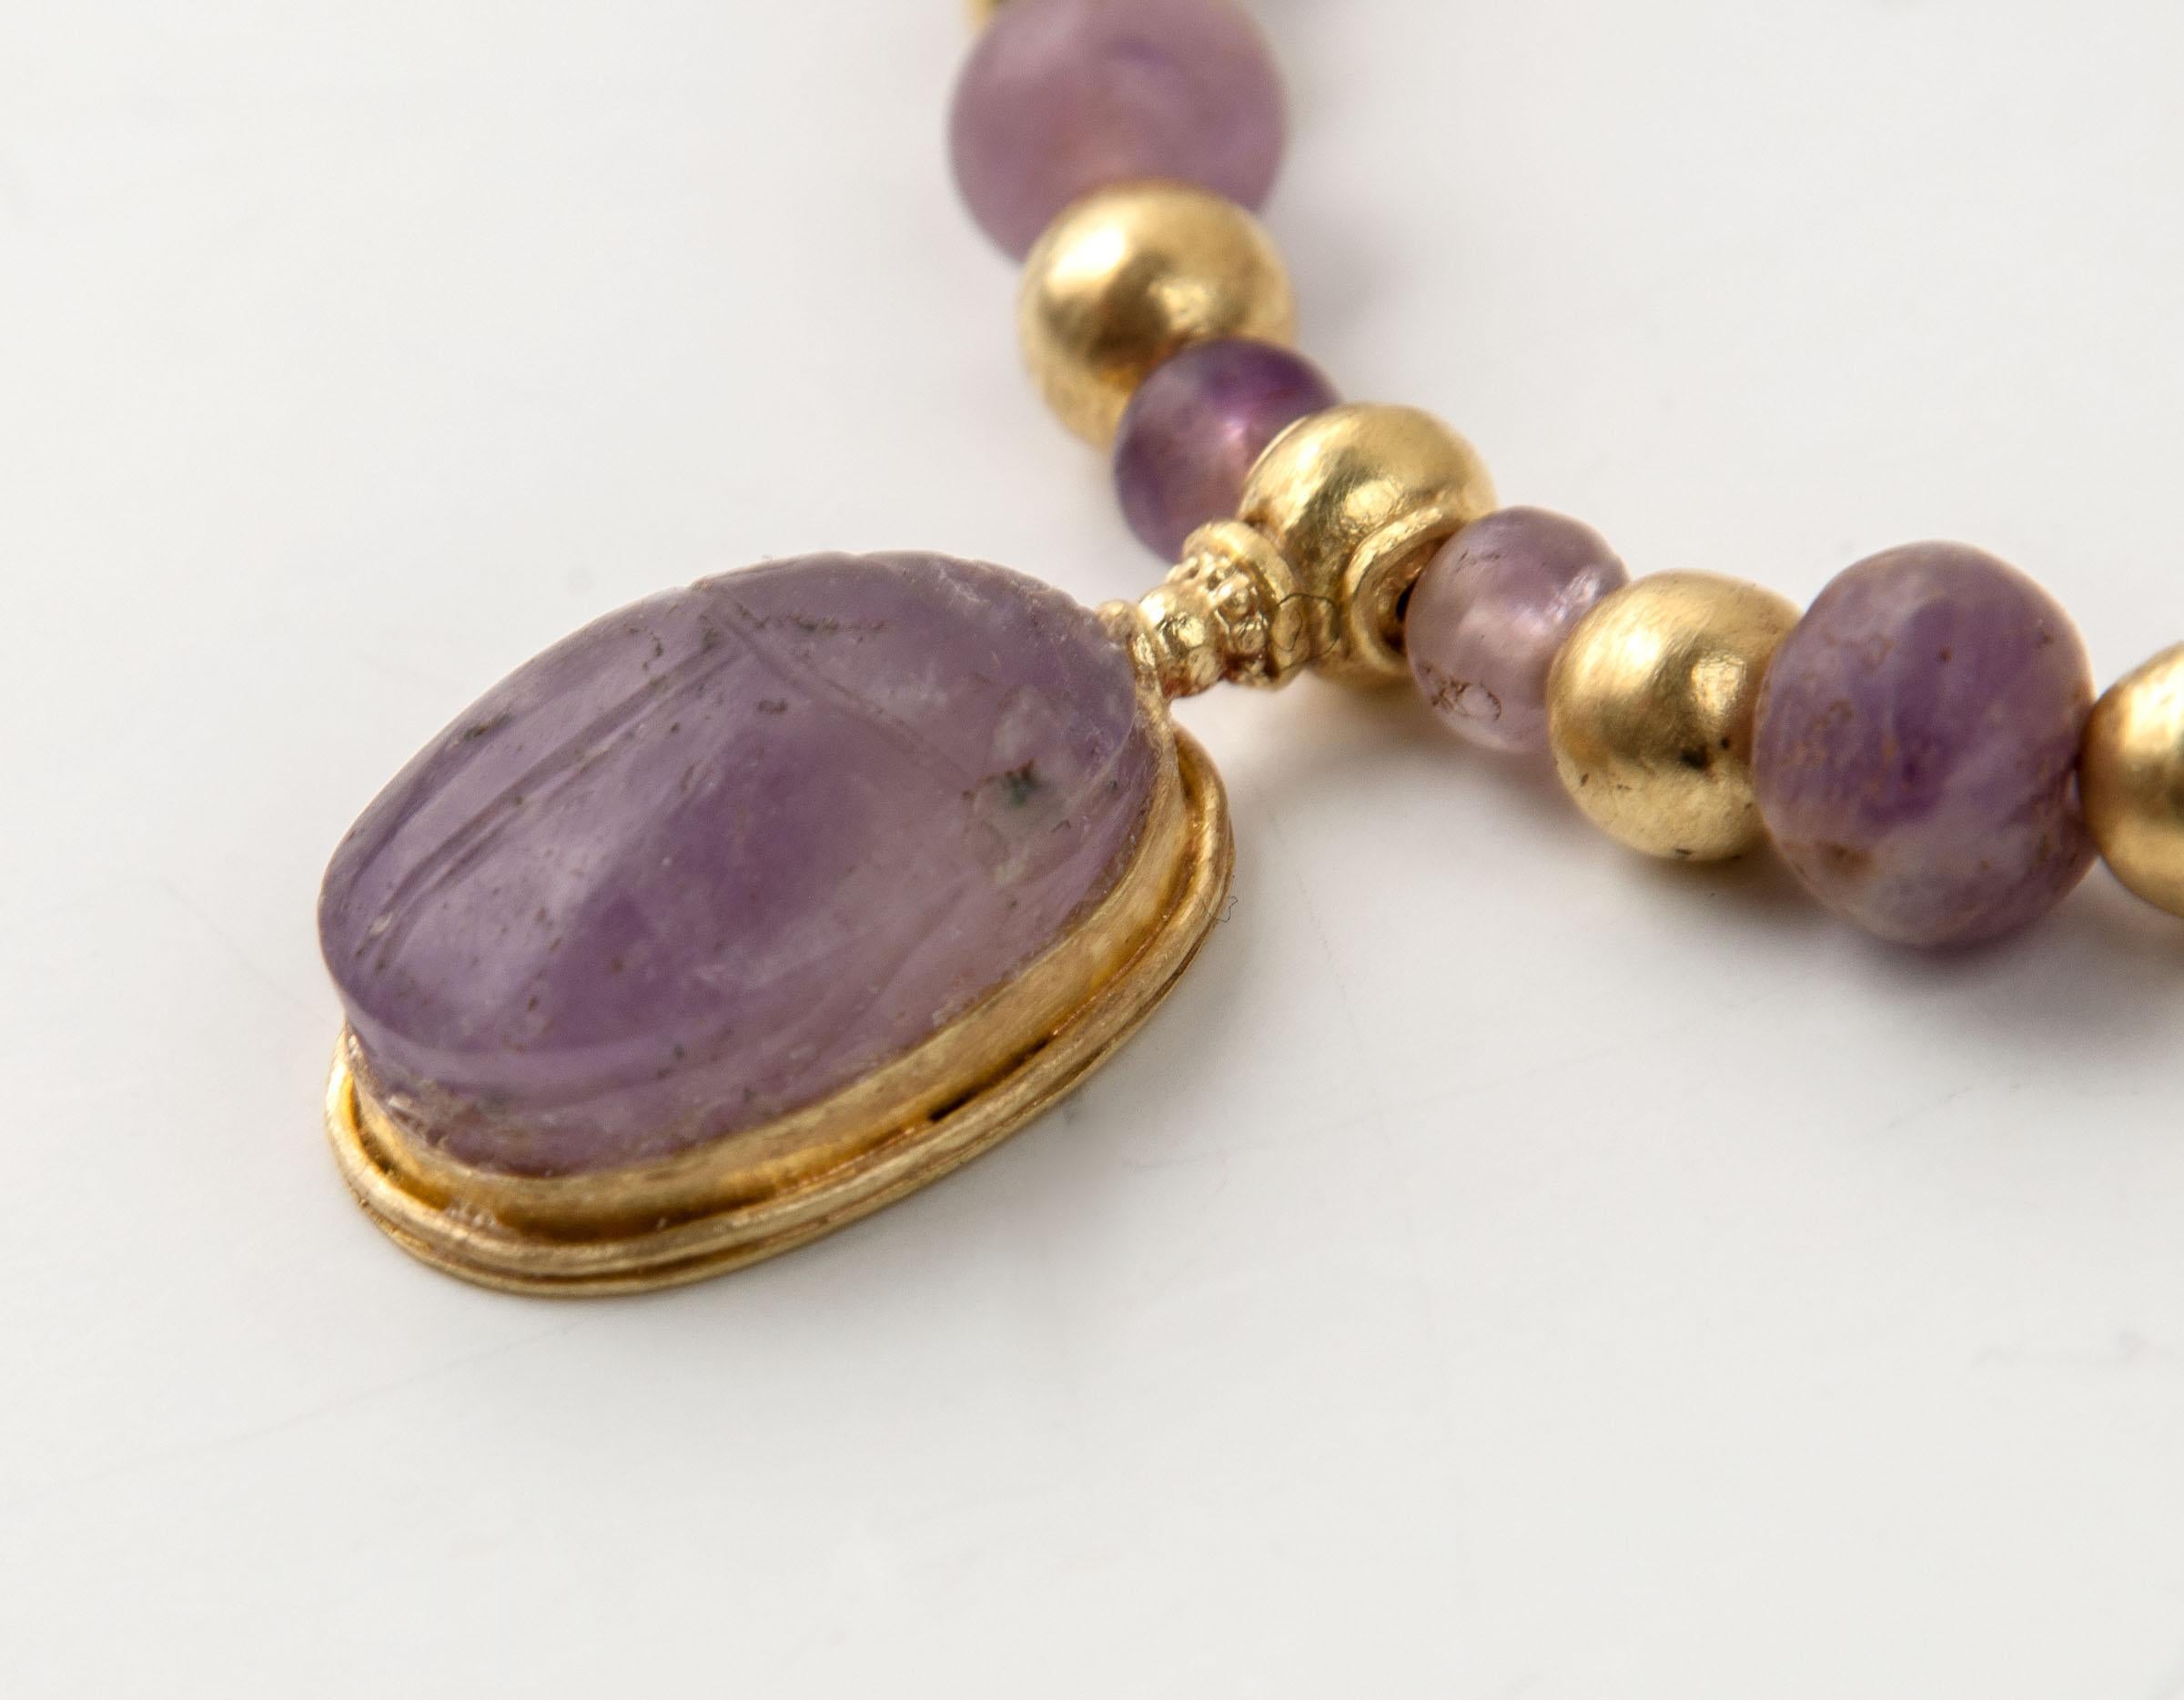 Collier de perles d'améthyste et de grenat de l'Égypte ancienne avec un pendentif scarabée en améthyste dans une monture en or. Il y a vingt-sept perles rondes d'améthyste et vingt-deux perles rondes de grenat dont la taille varie de l'avant à